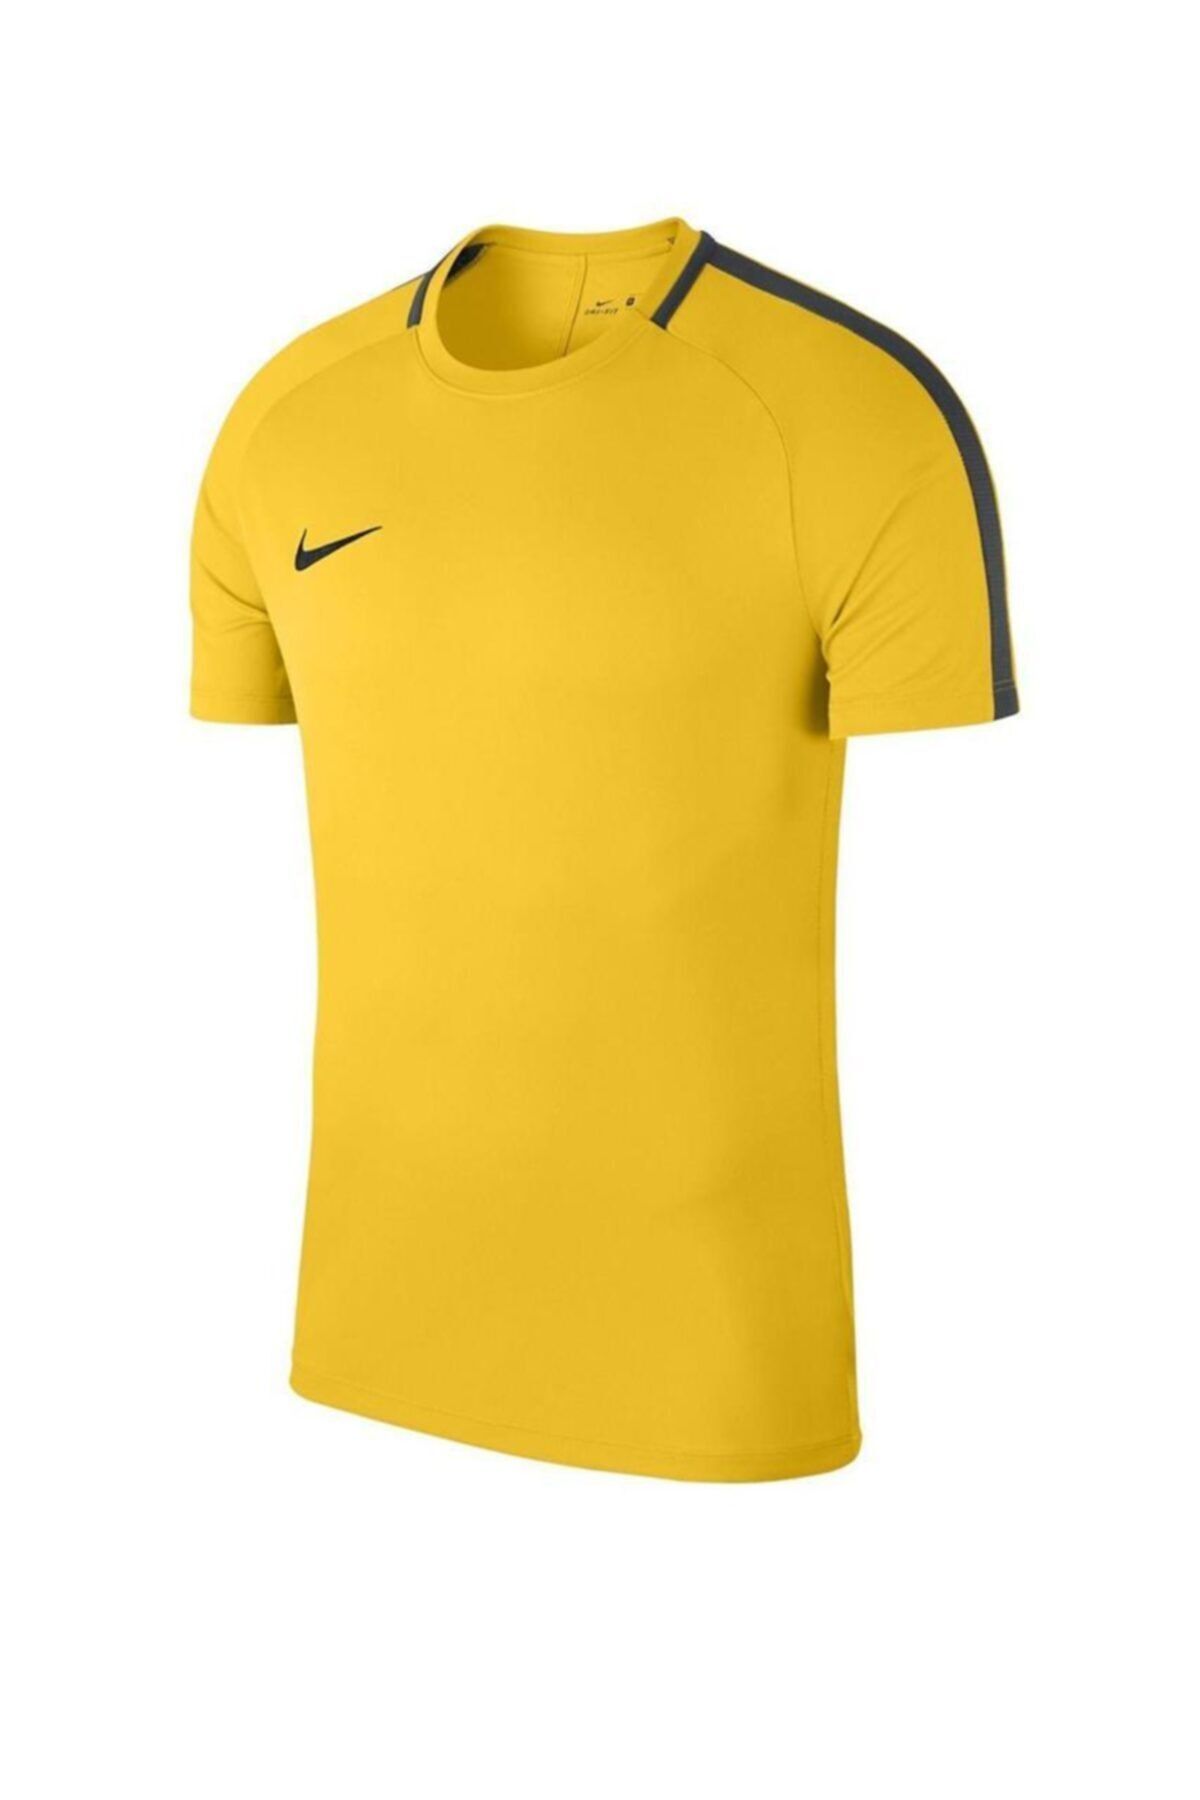 Nike Academy 18 Ss Top Sarı T-shirt 893693-719